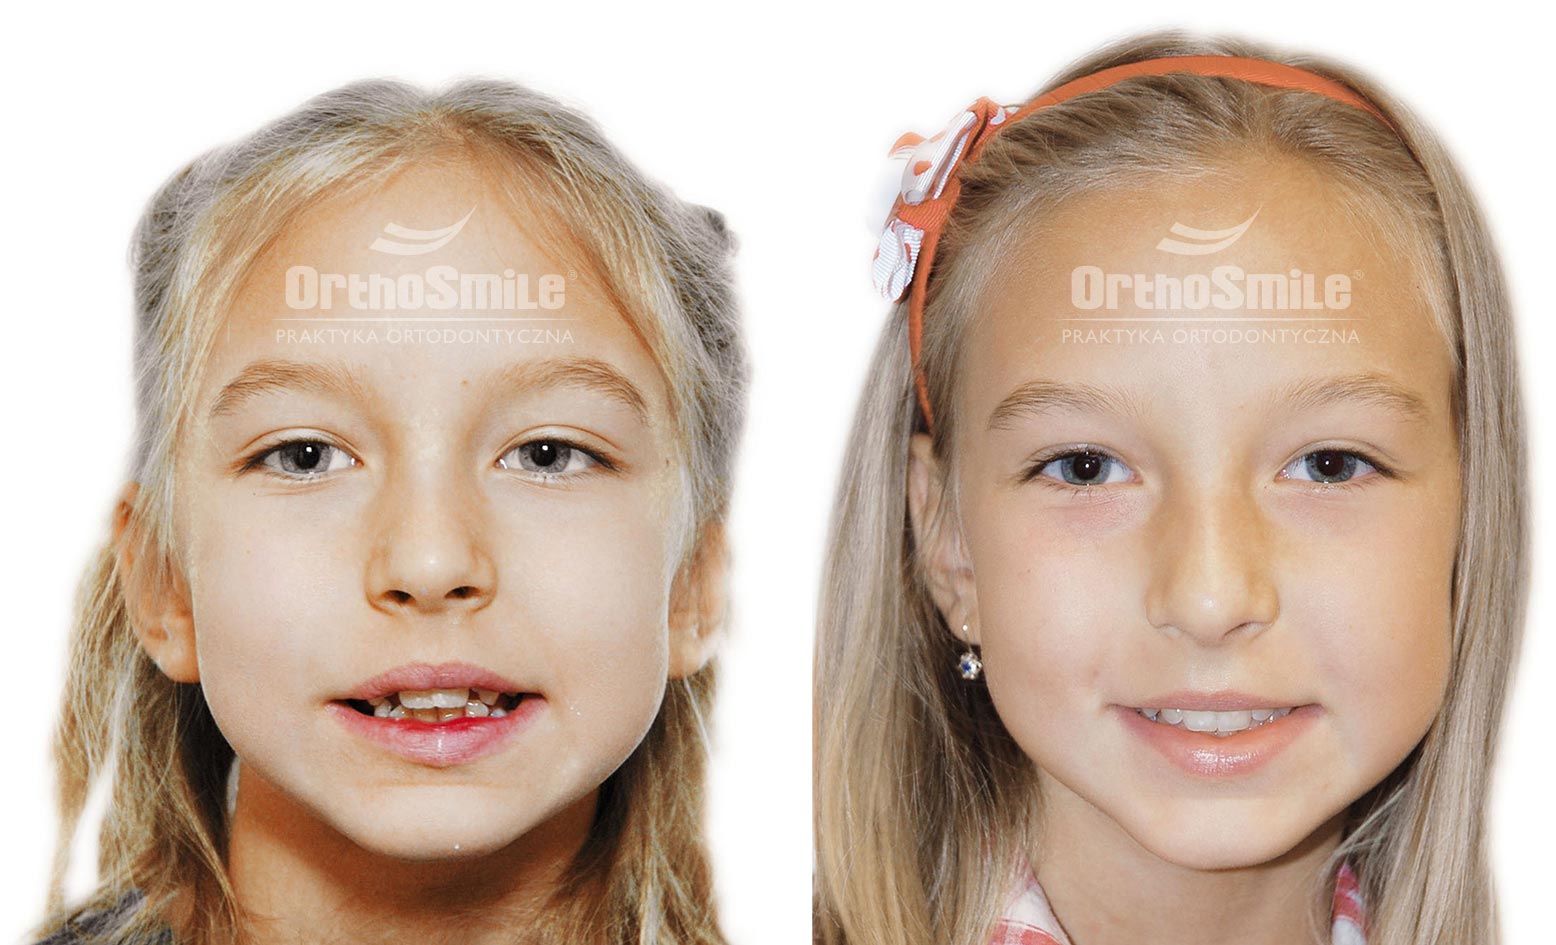 Praktyka Ortodontyczna Orthosmile, Wrocław: złe nawyki, ssanie palca, aparat fragmentaryczny, ortodoncja, leczenie wczesne